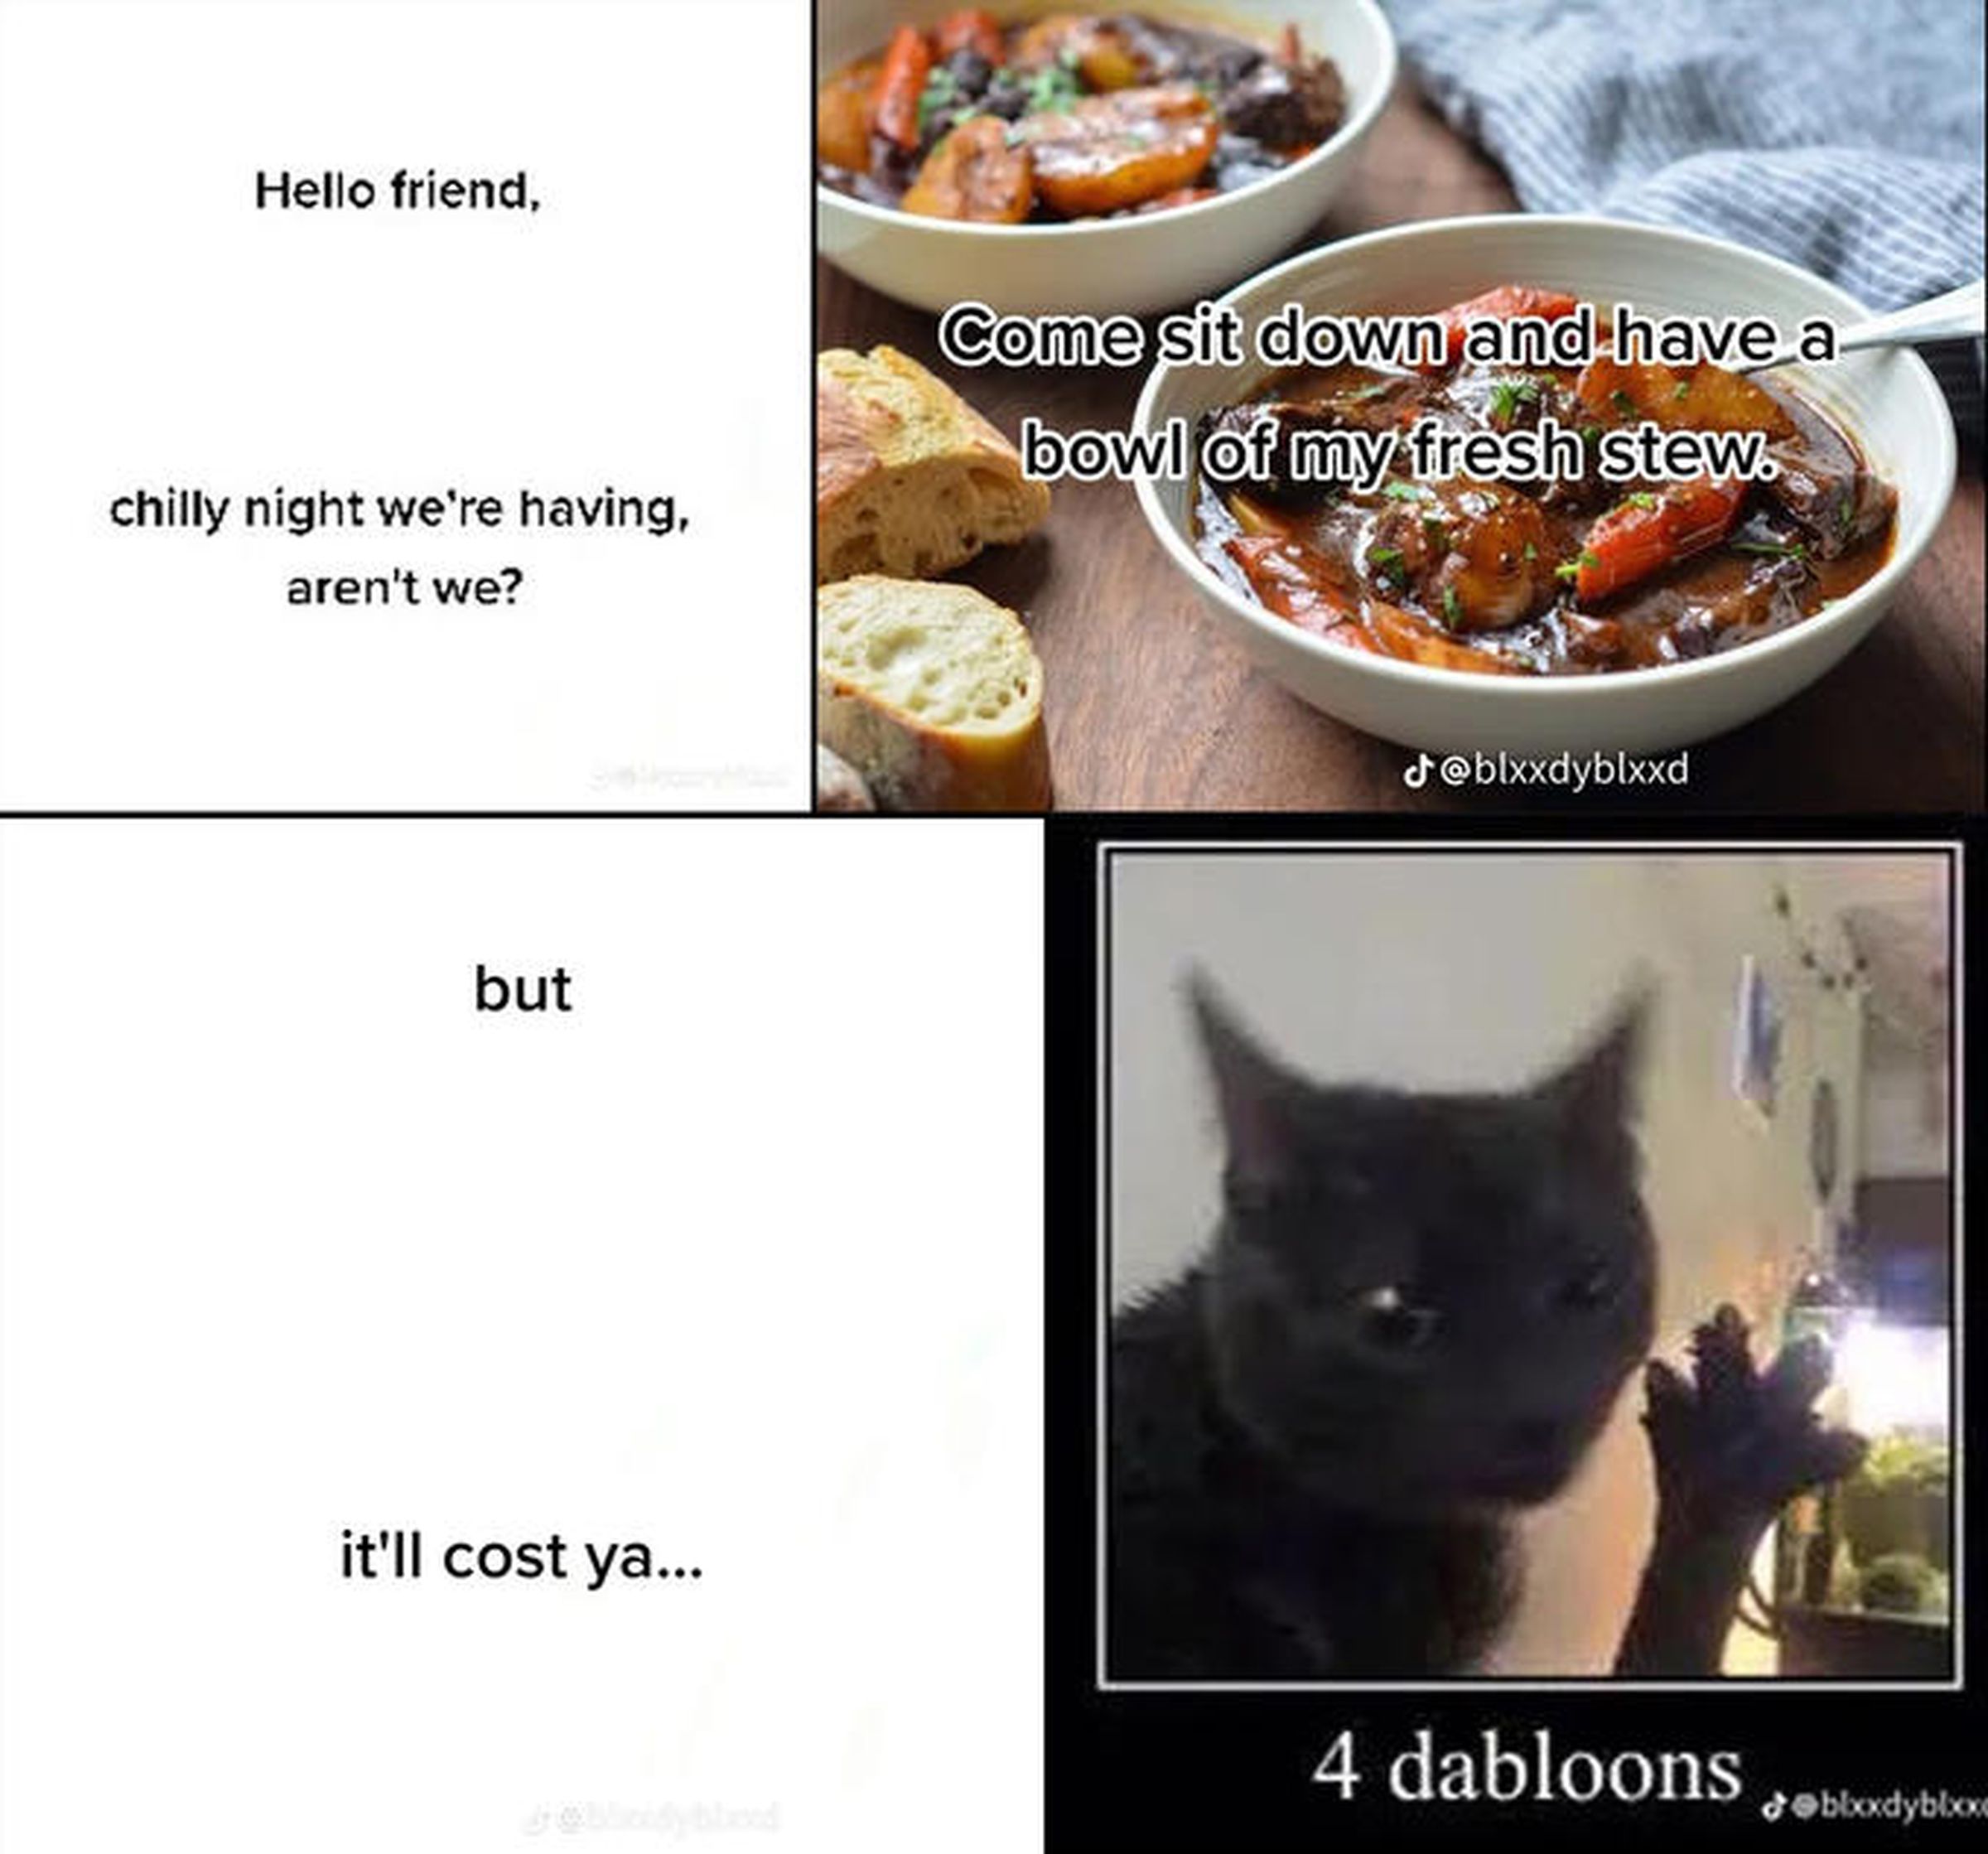 Um meme de quatro painéis em que um gato oferece ao usuário um ensopado em troca de 'dabloons'